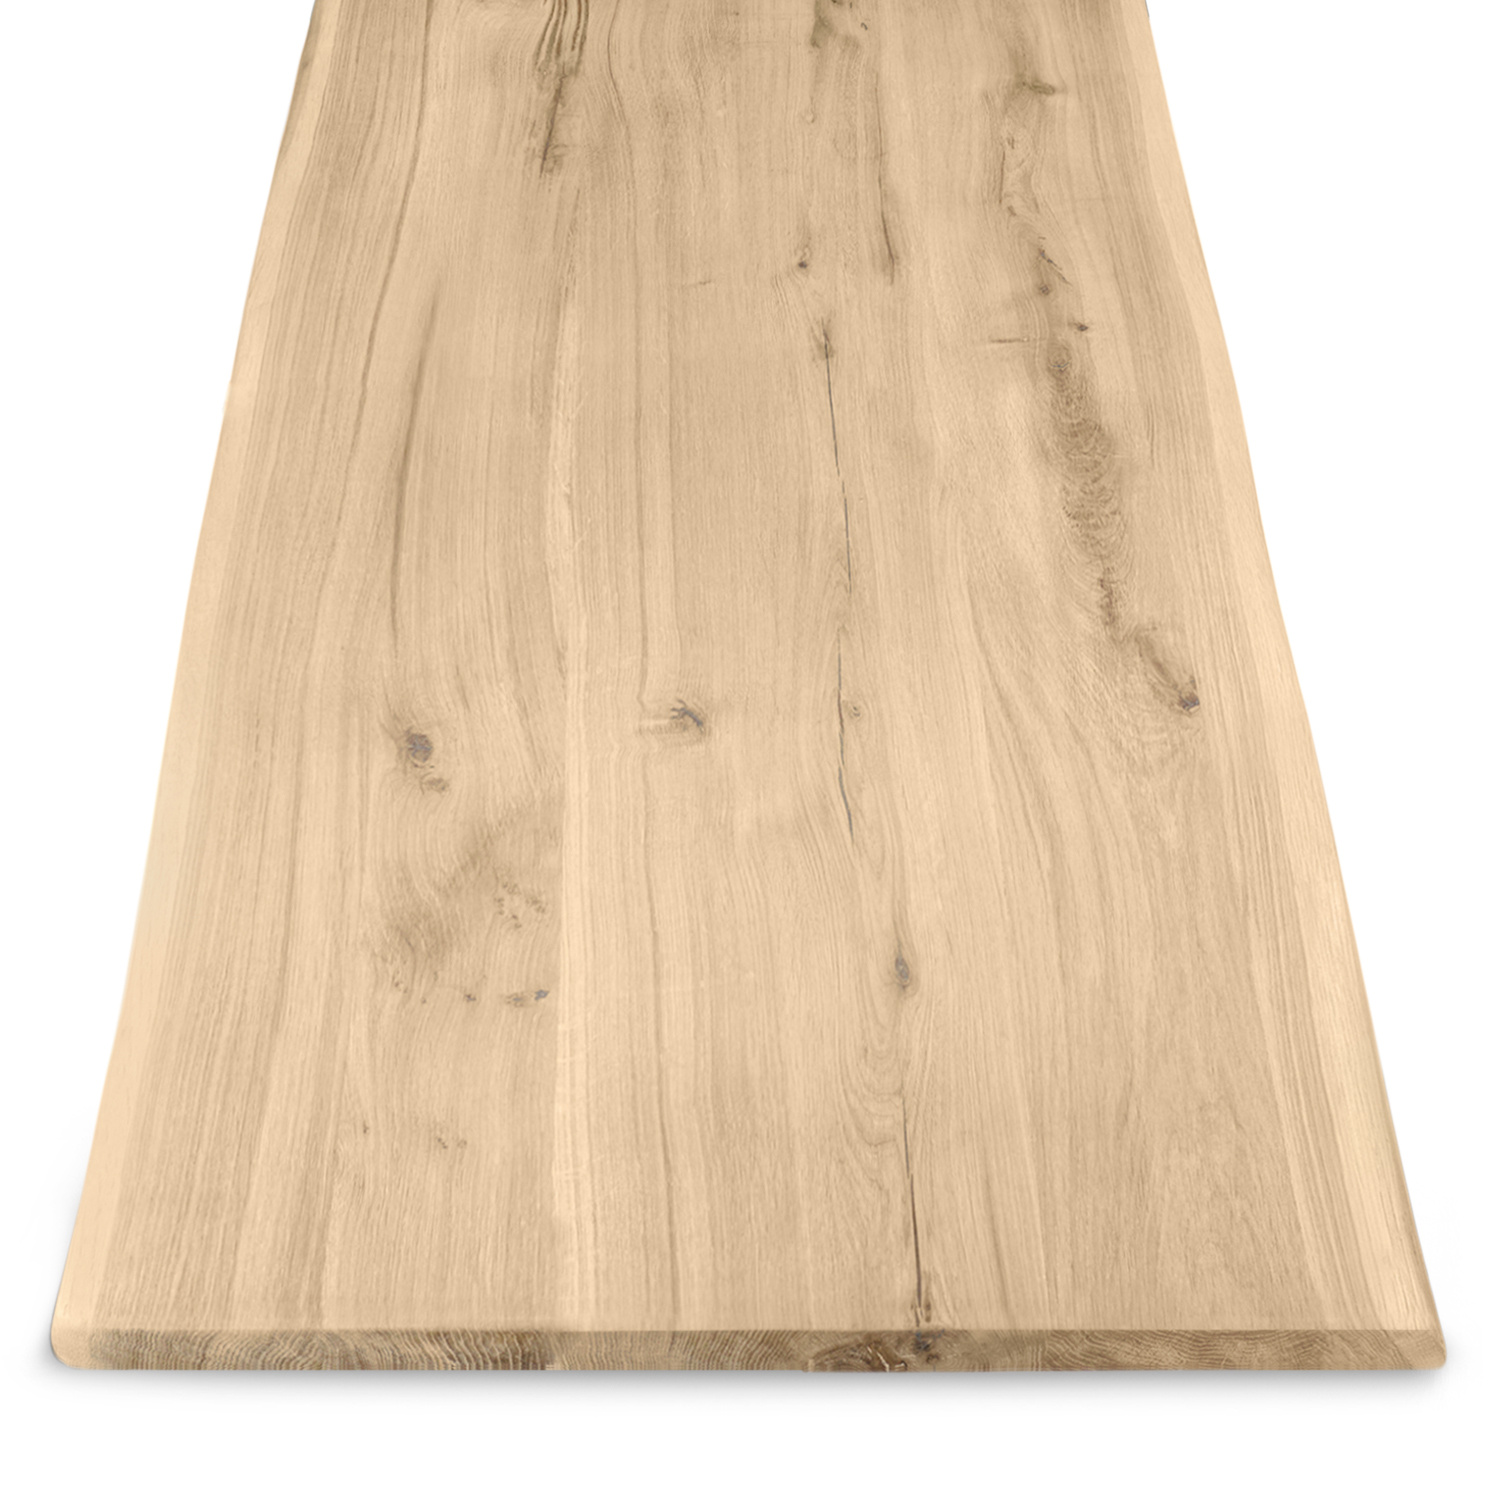  Tischplatte Wildeiche - Baumkante - 3 cm dick (1-Schicht) - XXL Lamellen (14-20 cm breit) - Asteiche (rustikal) mit natürlichen Baumkant - verleimt & künstlich getrocknet (HF 8-12%) - verschiedene Größen